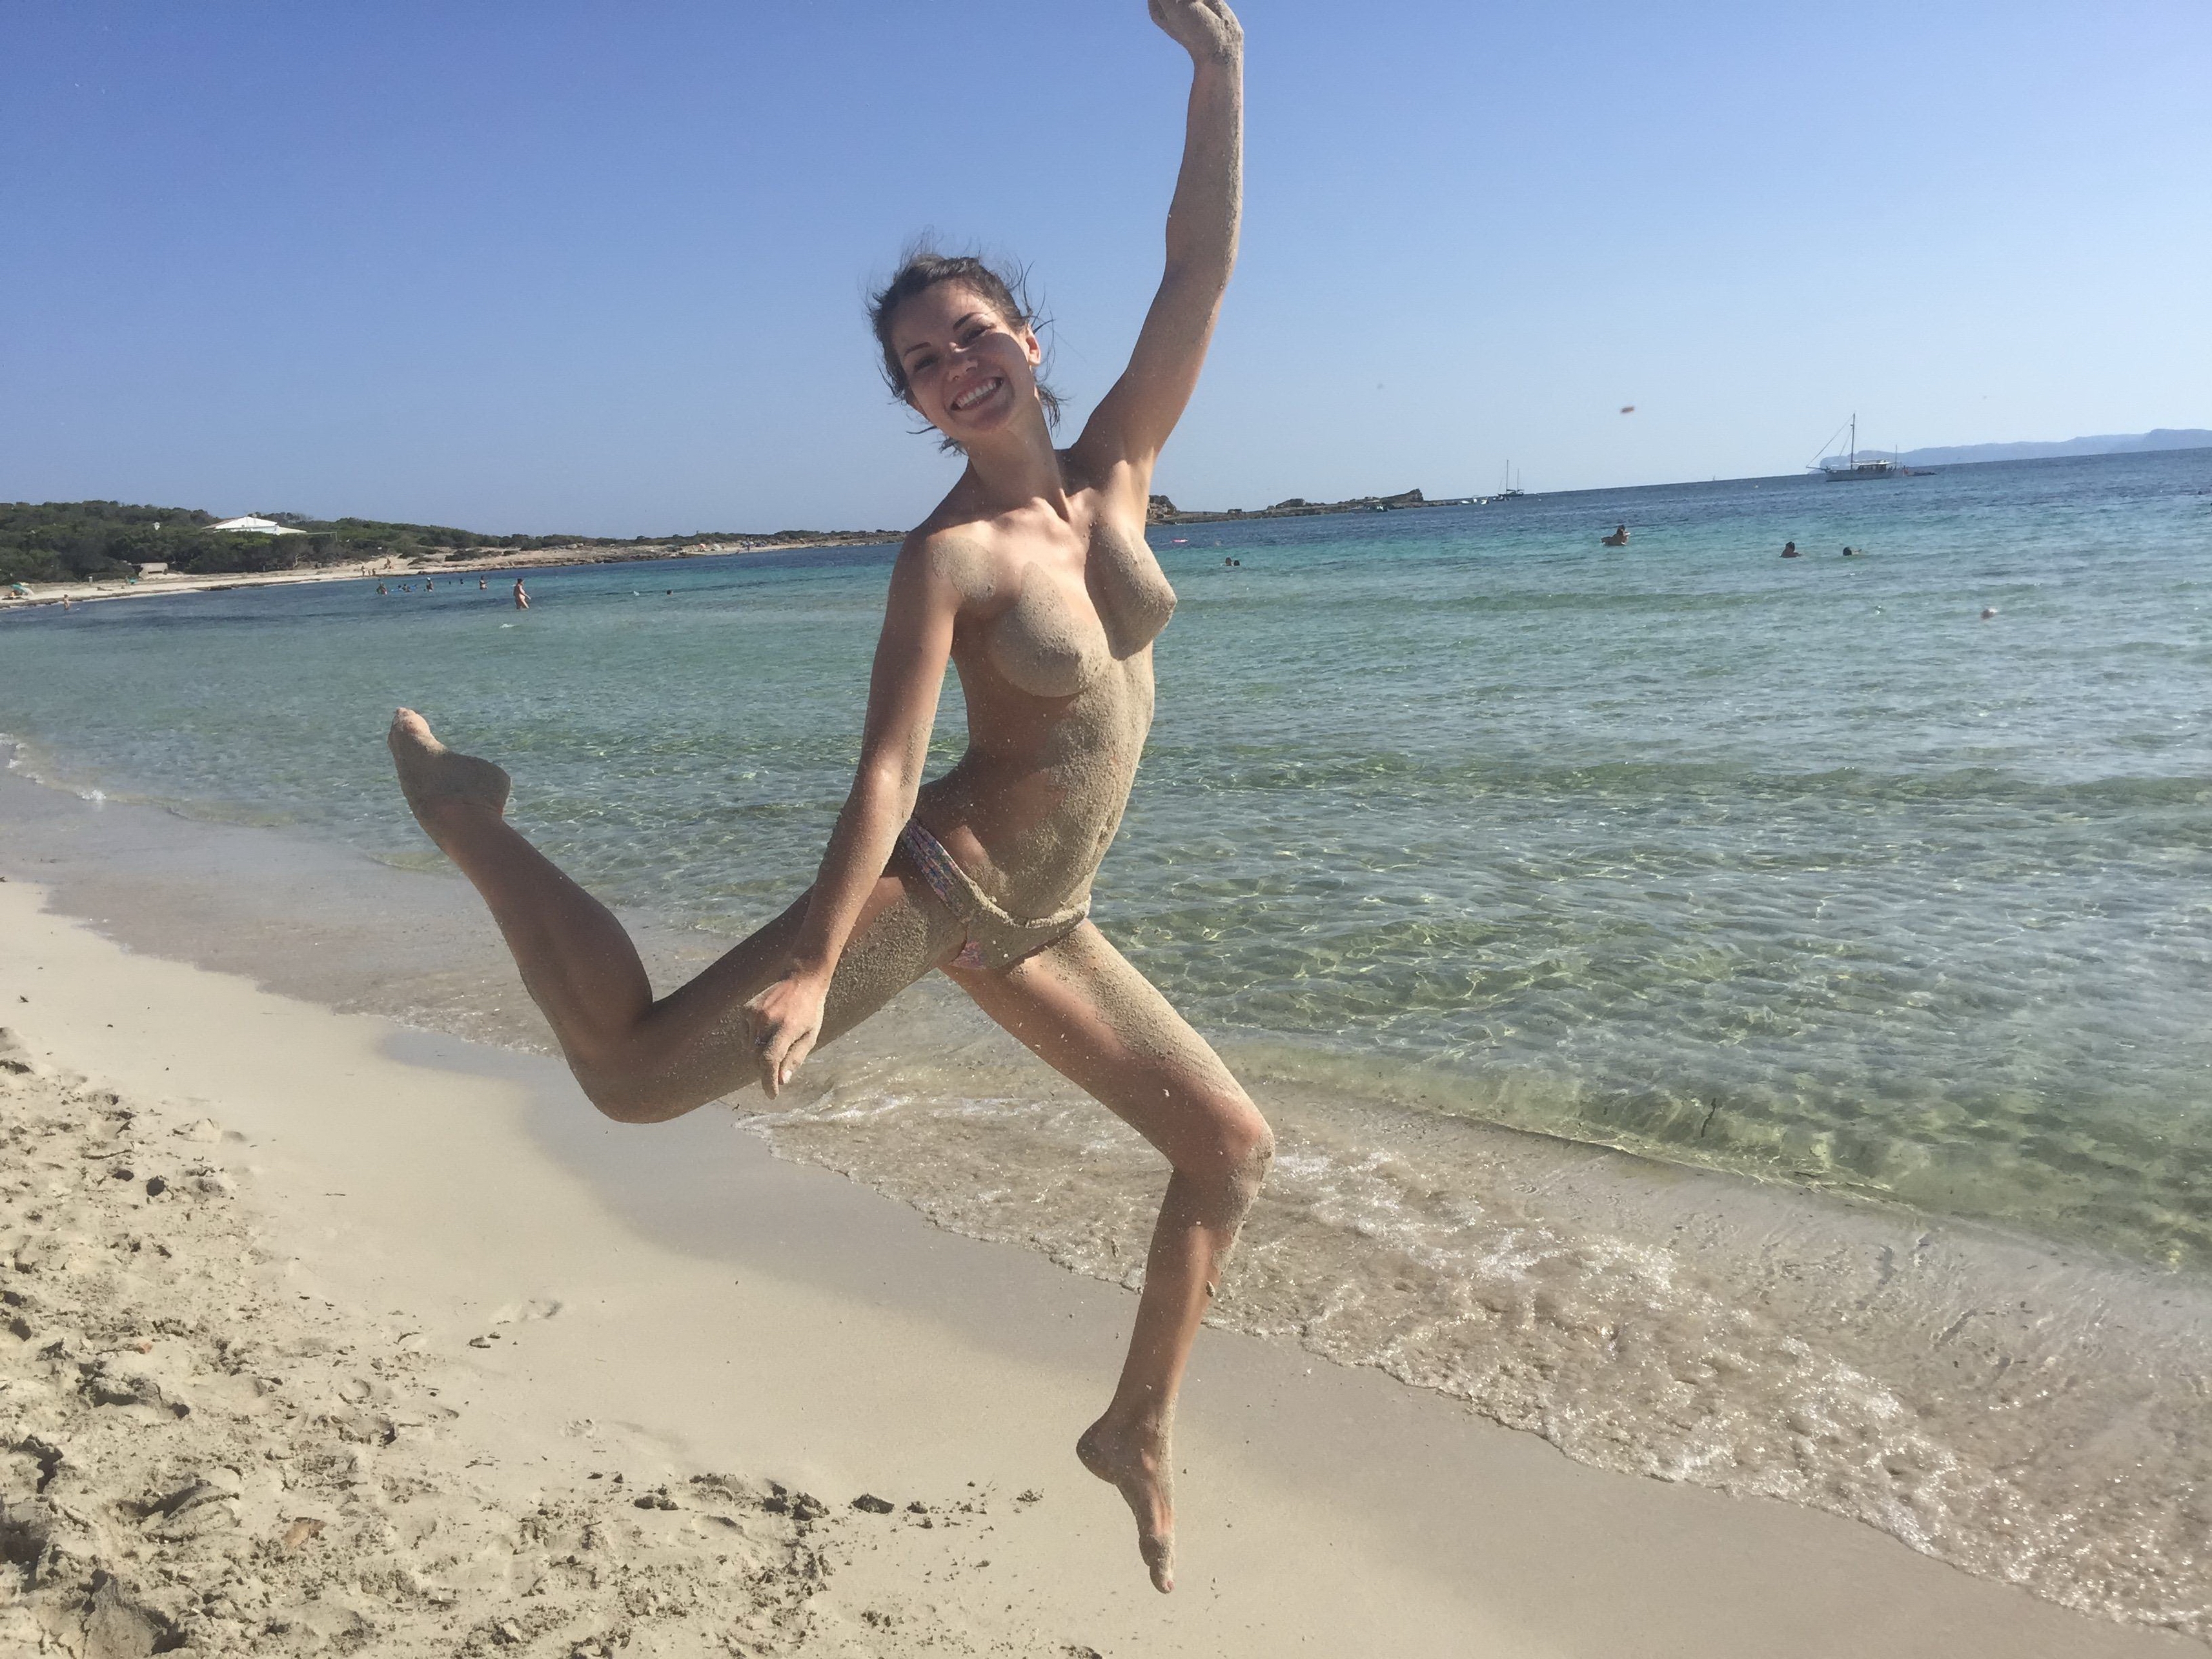 http://dru.pl/blog/stuff/wysportowana-dziewczyna/sexy-fit-sportive-girl-naked-on-vacation-young-amateur-selfie-15.jpg